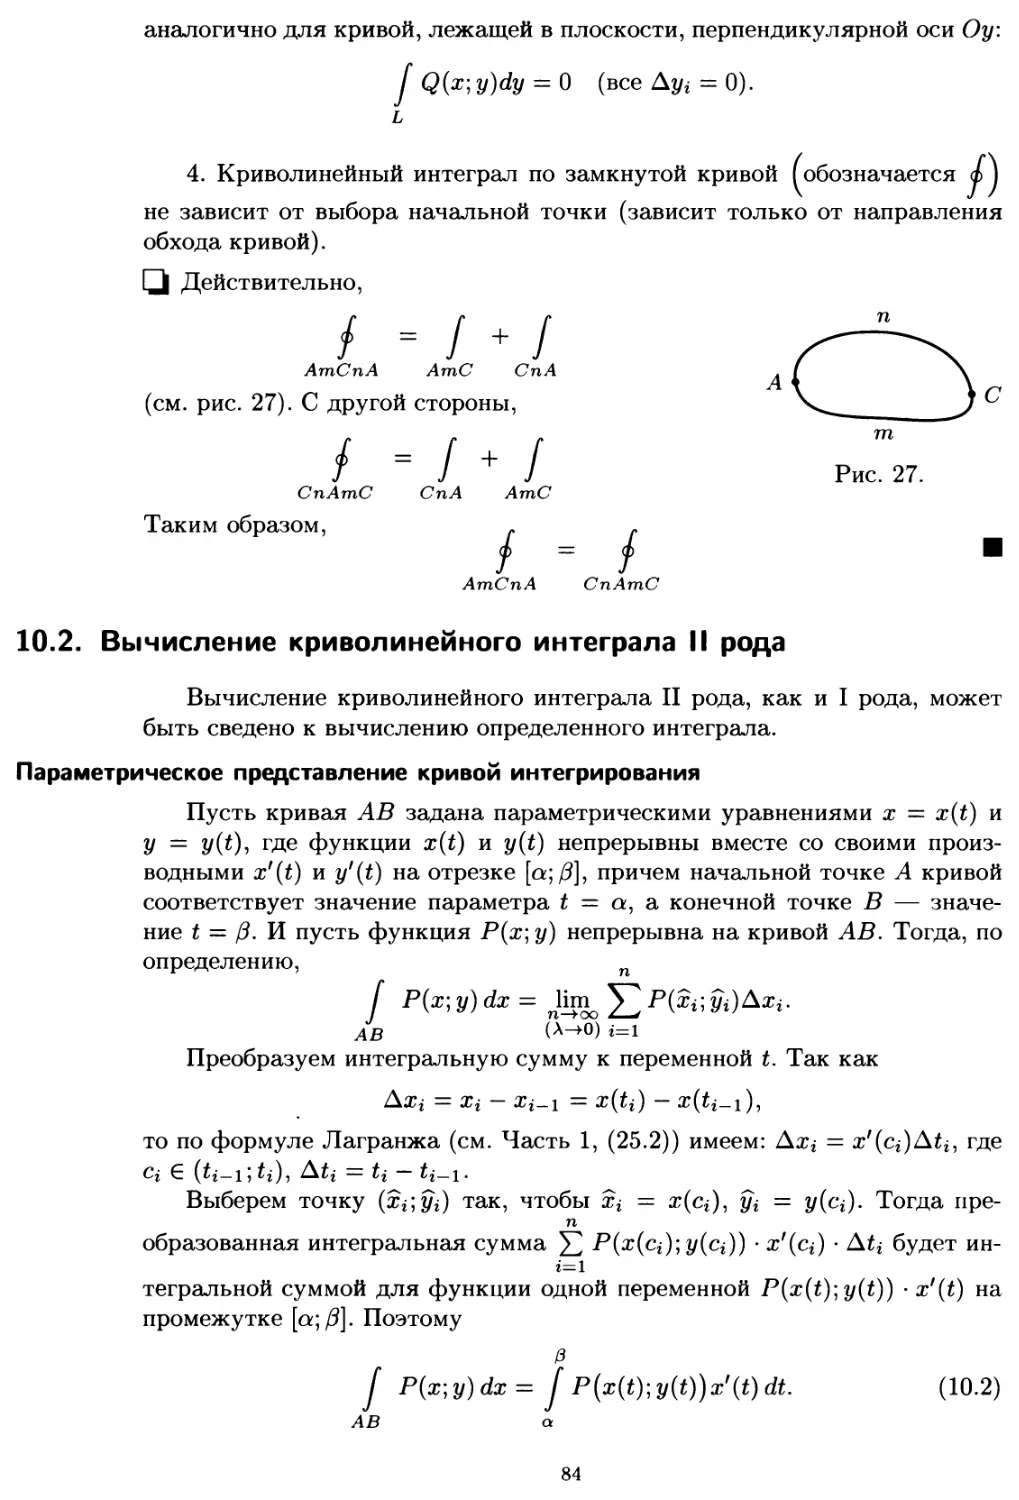 10.2. Вычисление криволинейного интеграла II рода